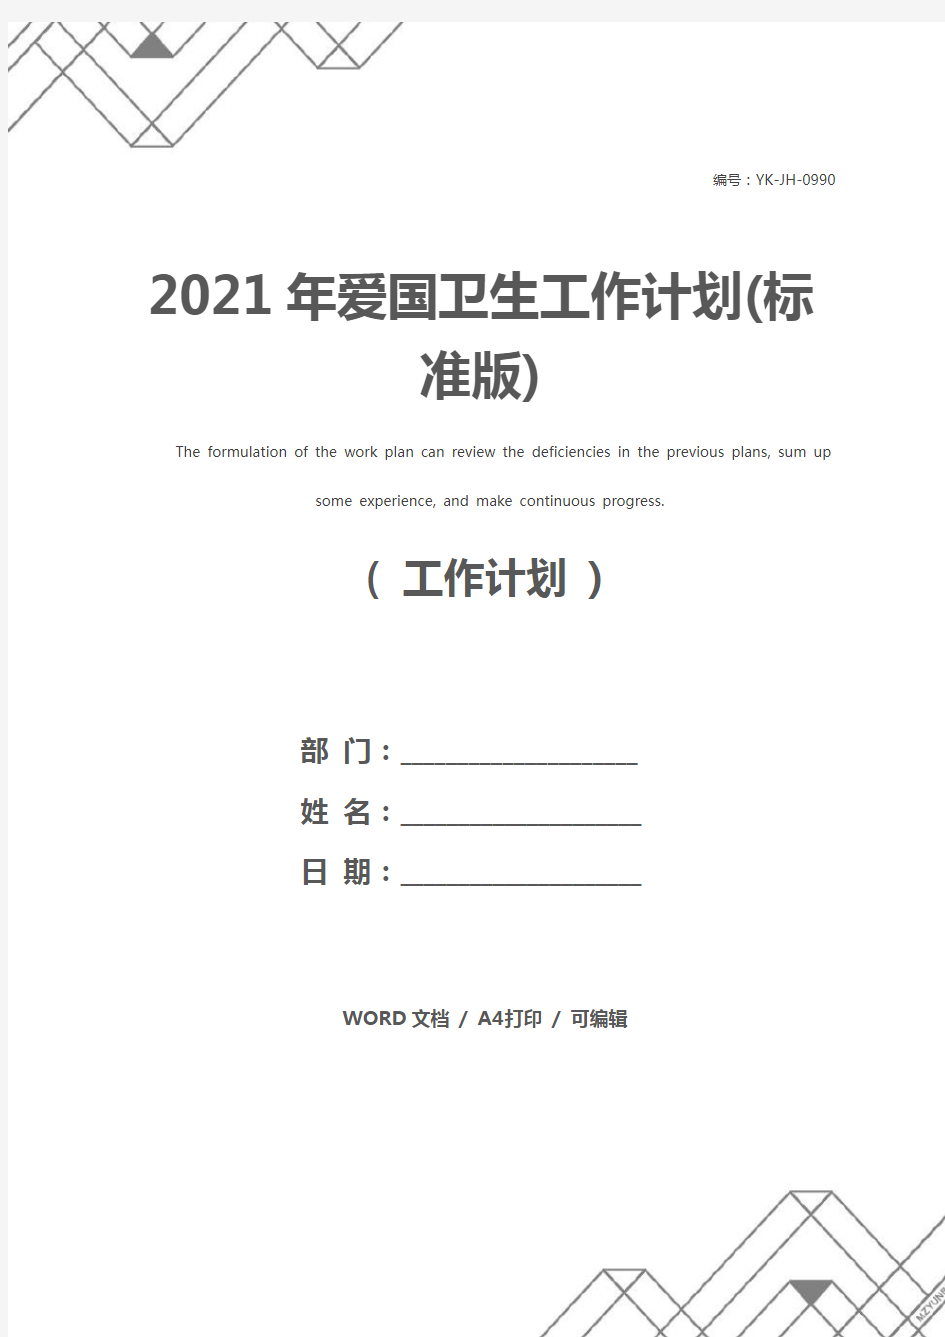 2021年爱国卫生工作计划(标准版)